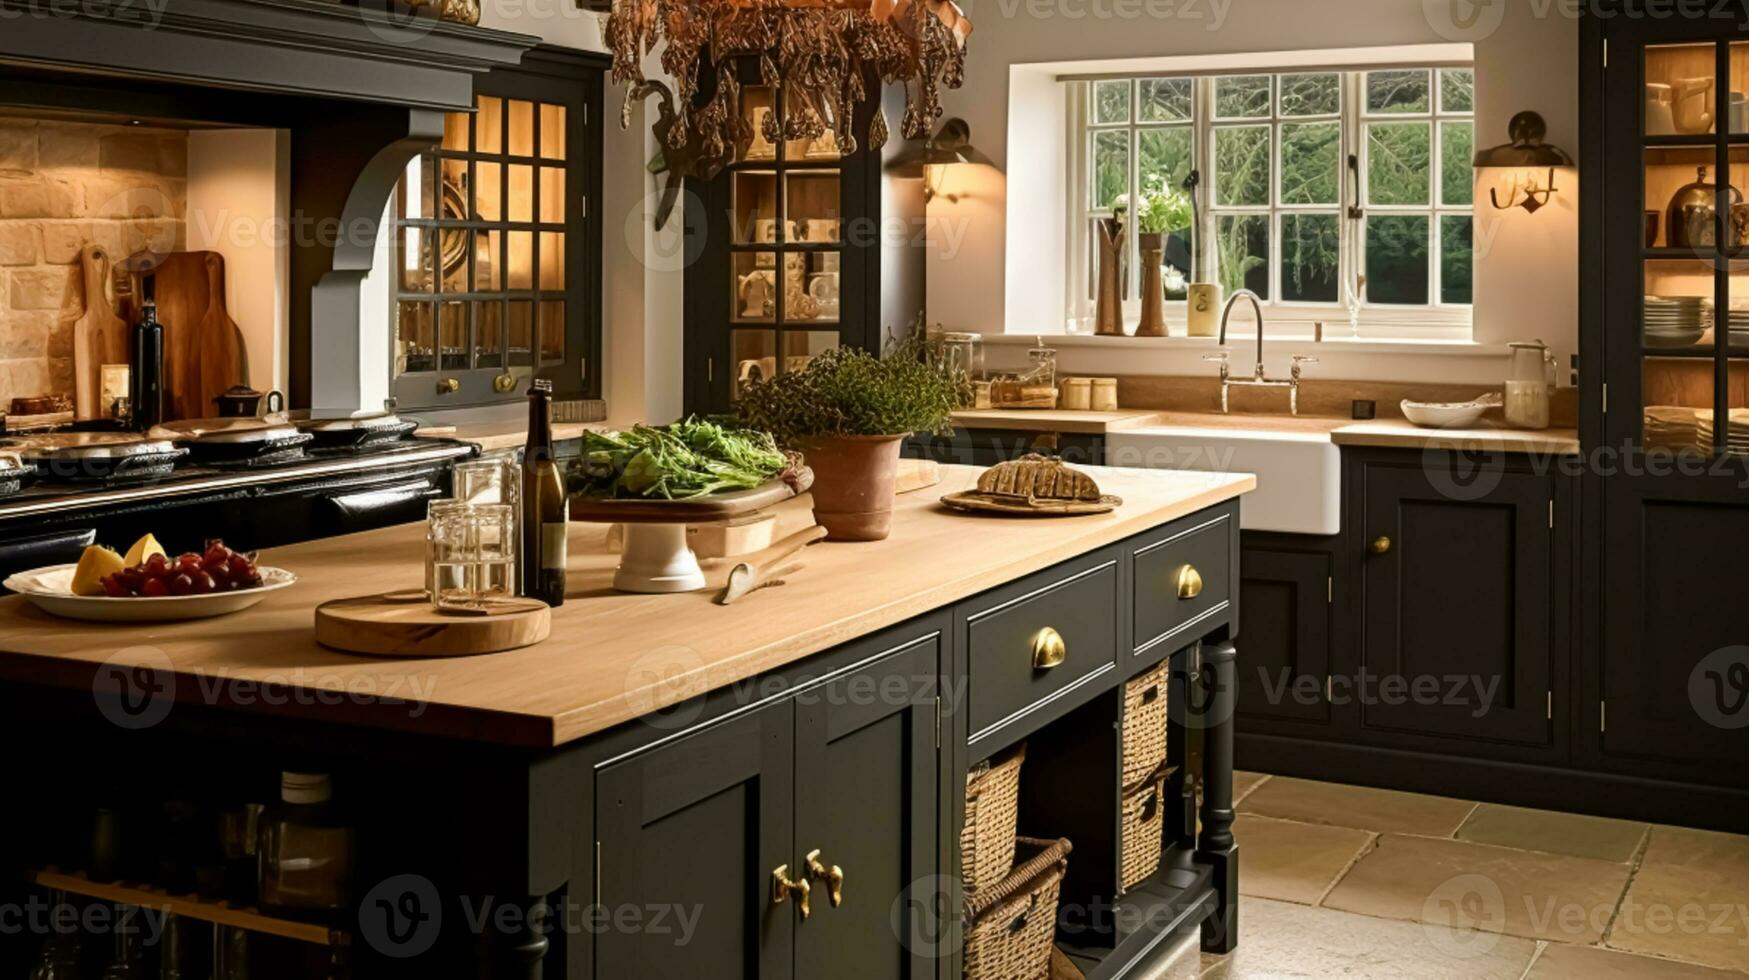 höstlig kök dekor, interiör design och hus dekoration, klassisk engelsk kök dekorerad för höst säsong i en Land hus, elegant stuga stil foto